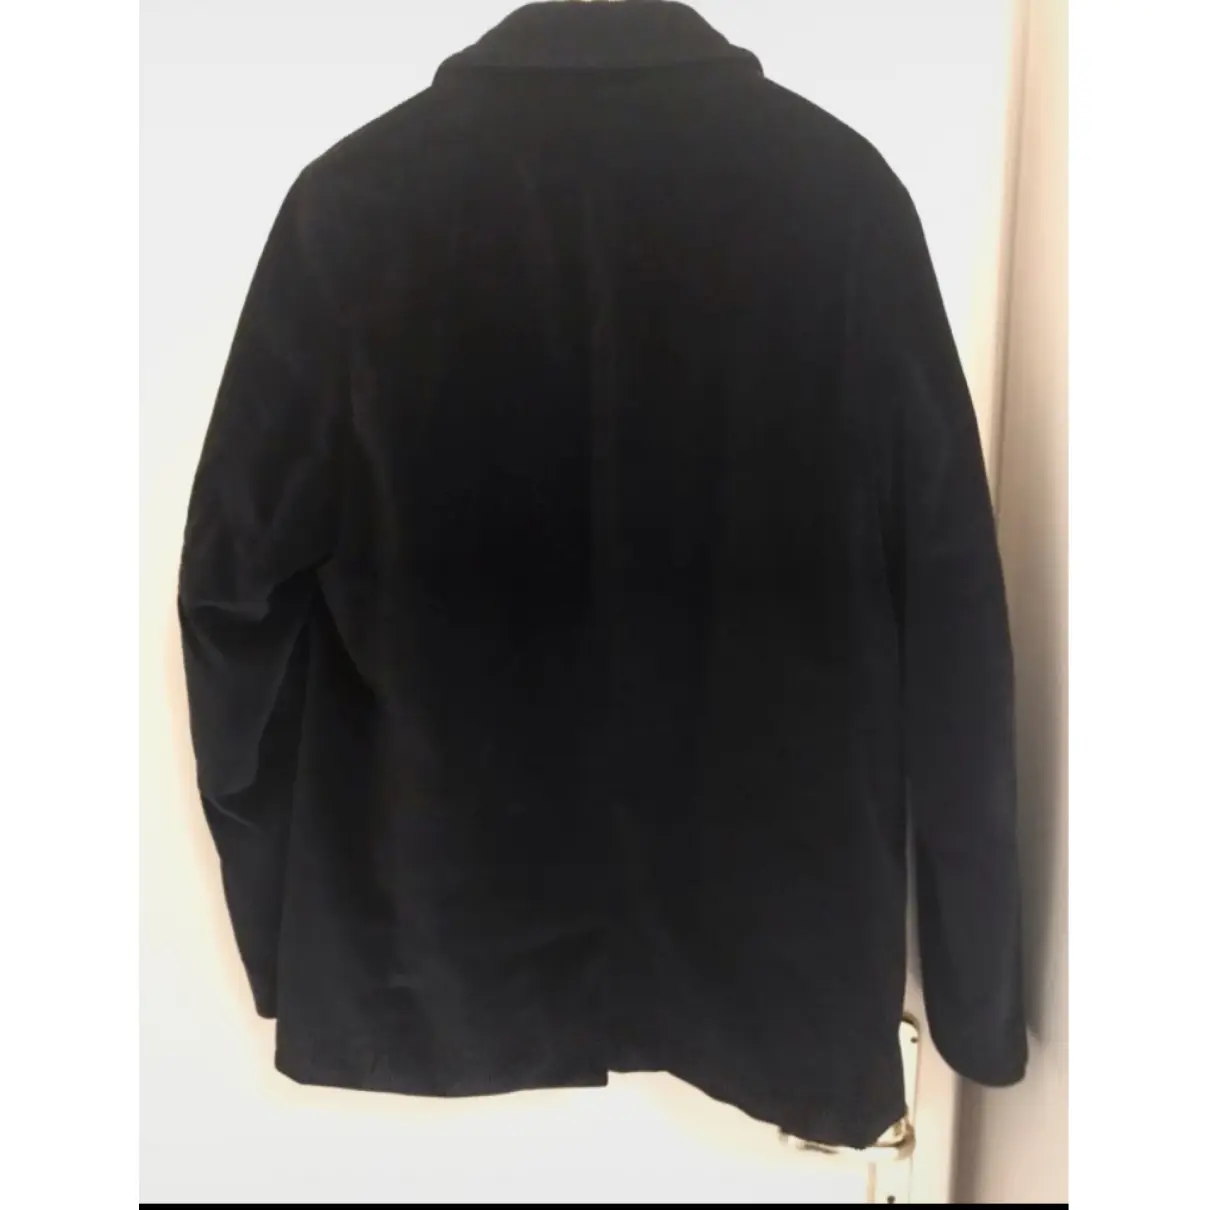 Buy Palto Velvet coat online